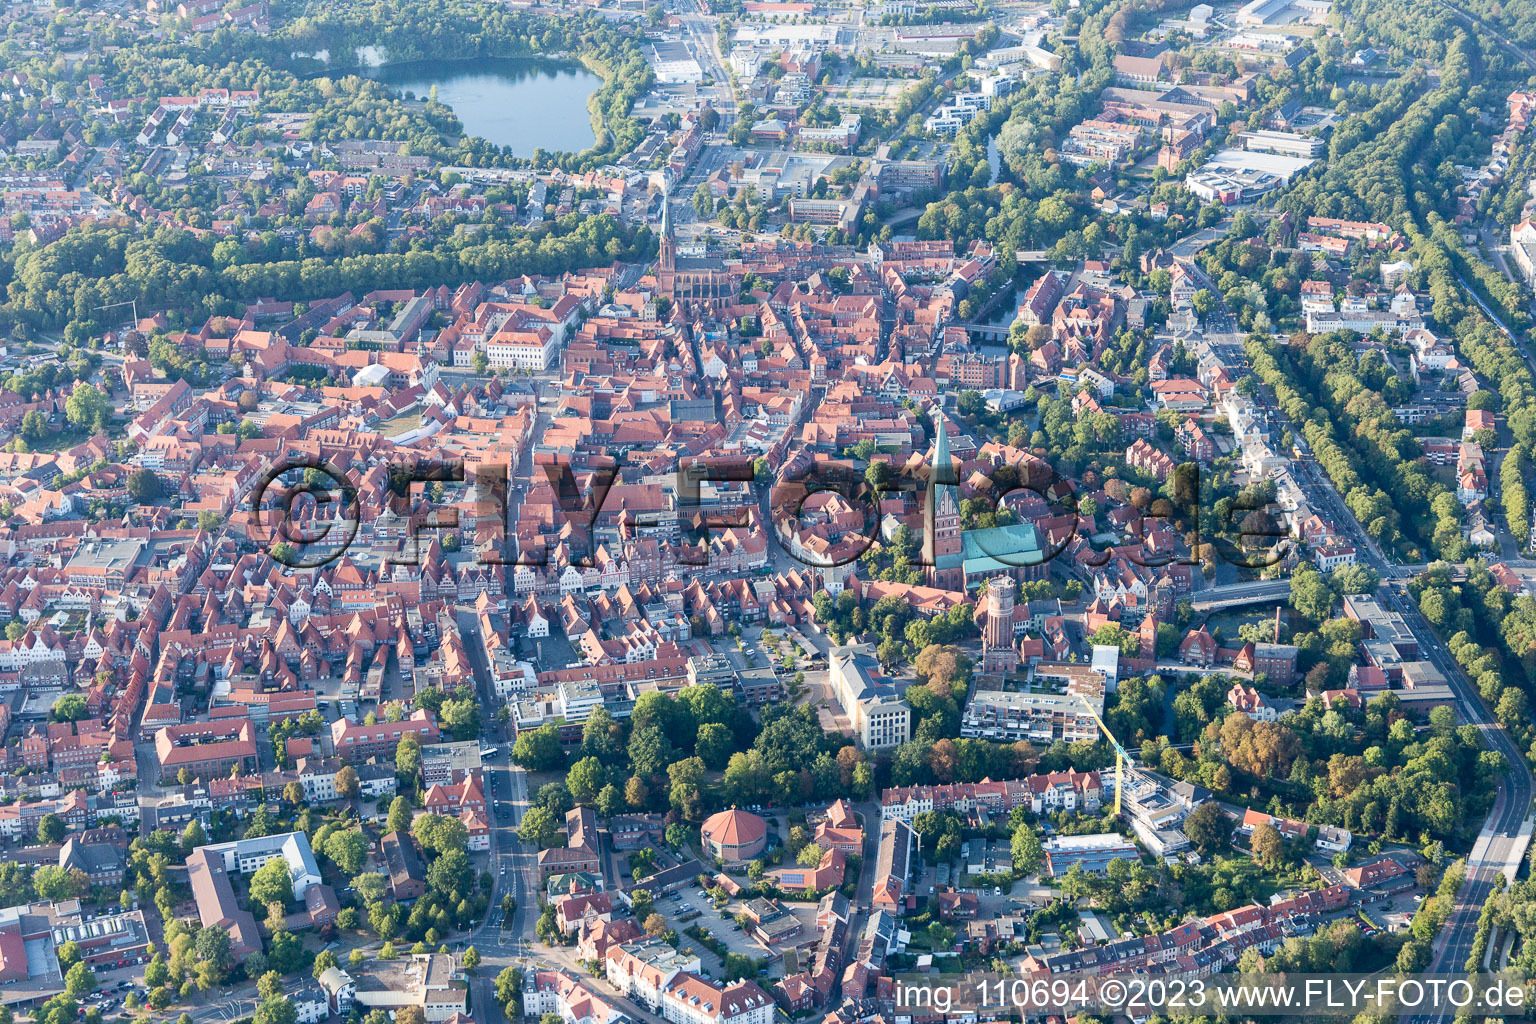 Altstadtbereich und Innenstadtzentrum in Lüneburg im Bundesland Niedersachsen, Deutschland von oben gesehen